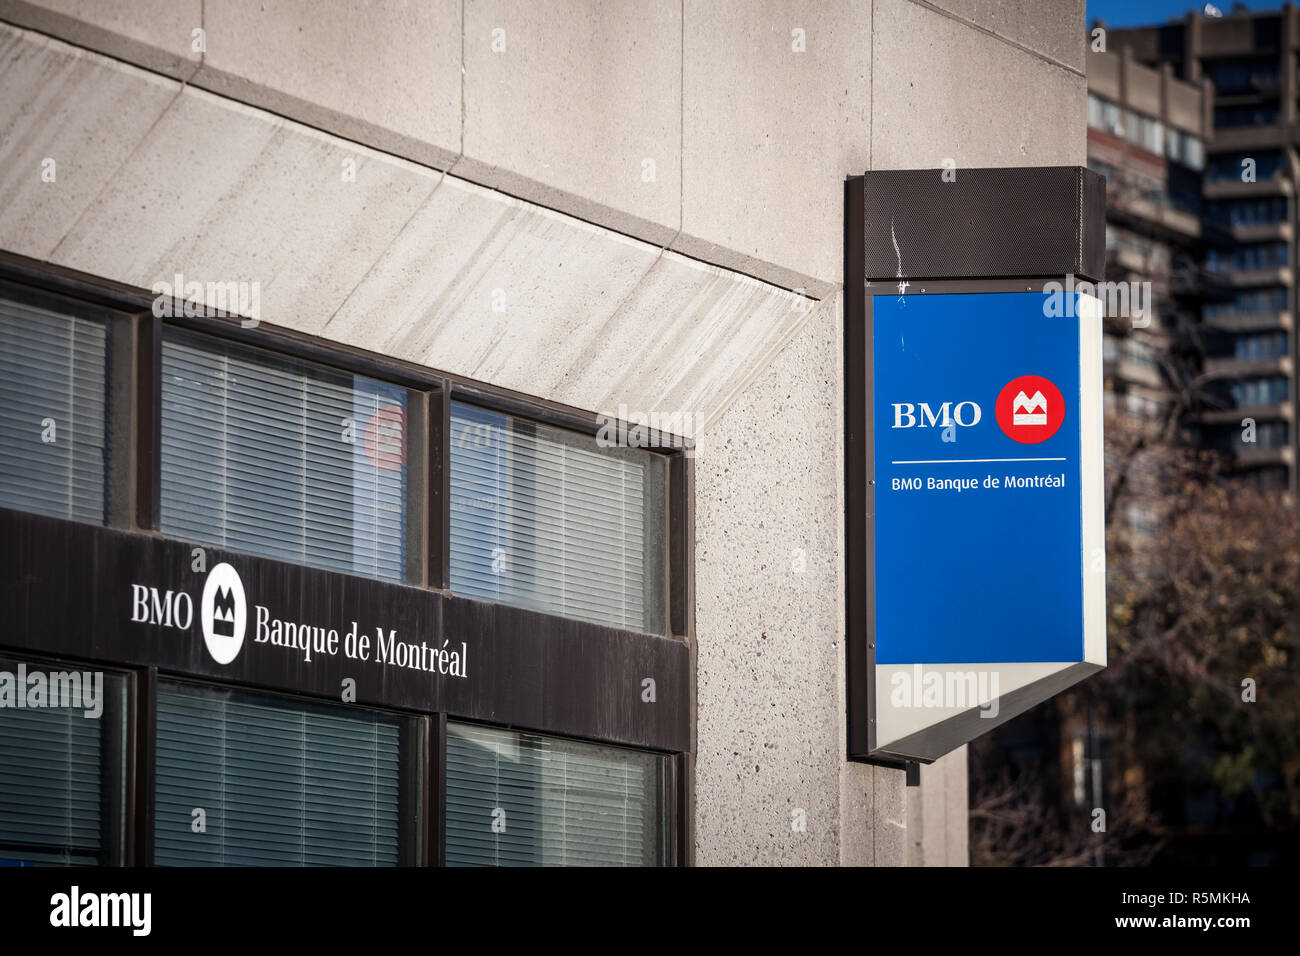 MONTREAL, Canadá - 4 de noviembre de 2018: Bank of Montreal, conocido como el logotipo de BMO, delante de una de sus sucursales. Llamado así como banco de Montreal, se encuentra en Foto de stock